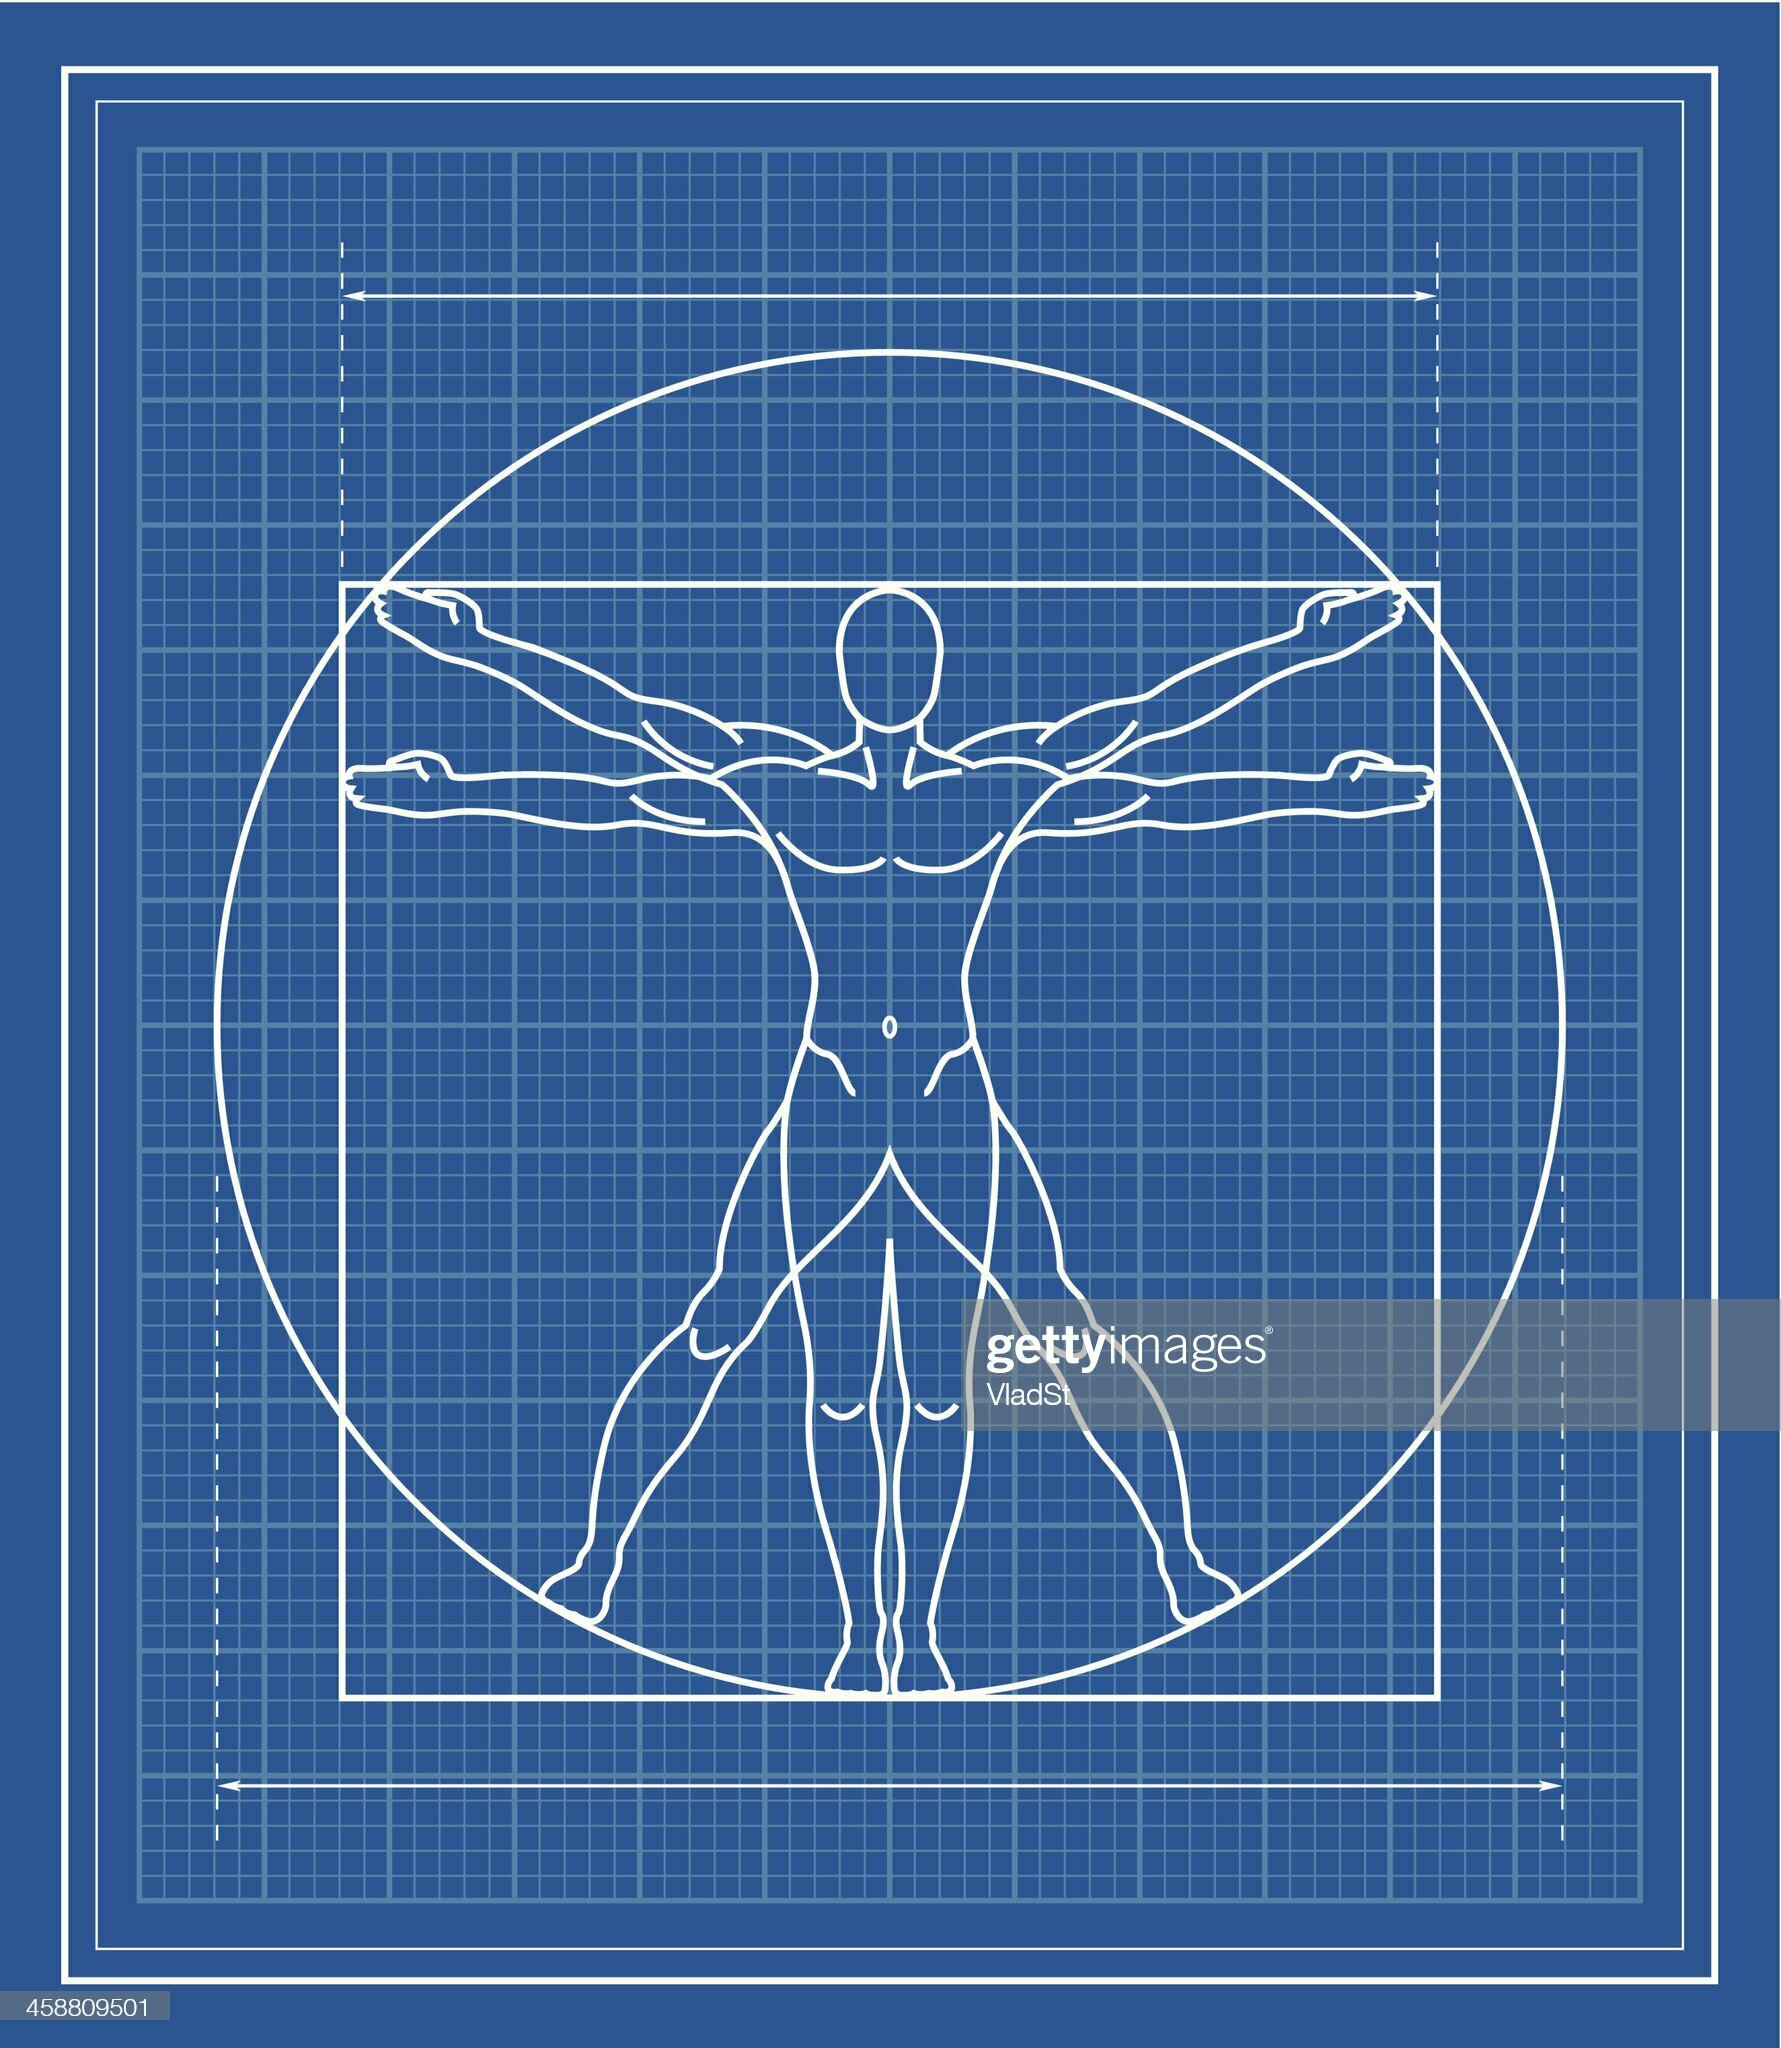 圖1.22：列奧納多·達·芬奇（Leonardo da Vinci）繪製於1485年左右的《維特魯威人》（Vitruvian Man）體現了一種信念，即人的比例是神聖的比例。這些信念促使文藝復興時期的建築師追求與人體比例相適應的幾何形狀。